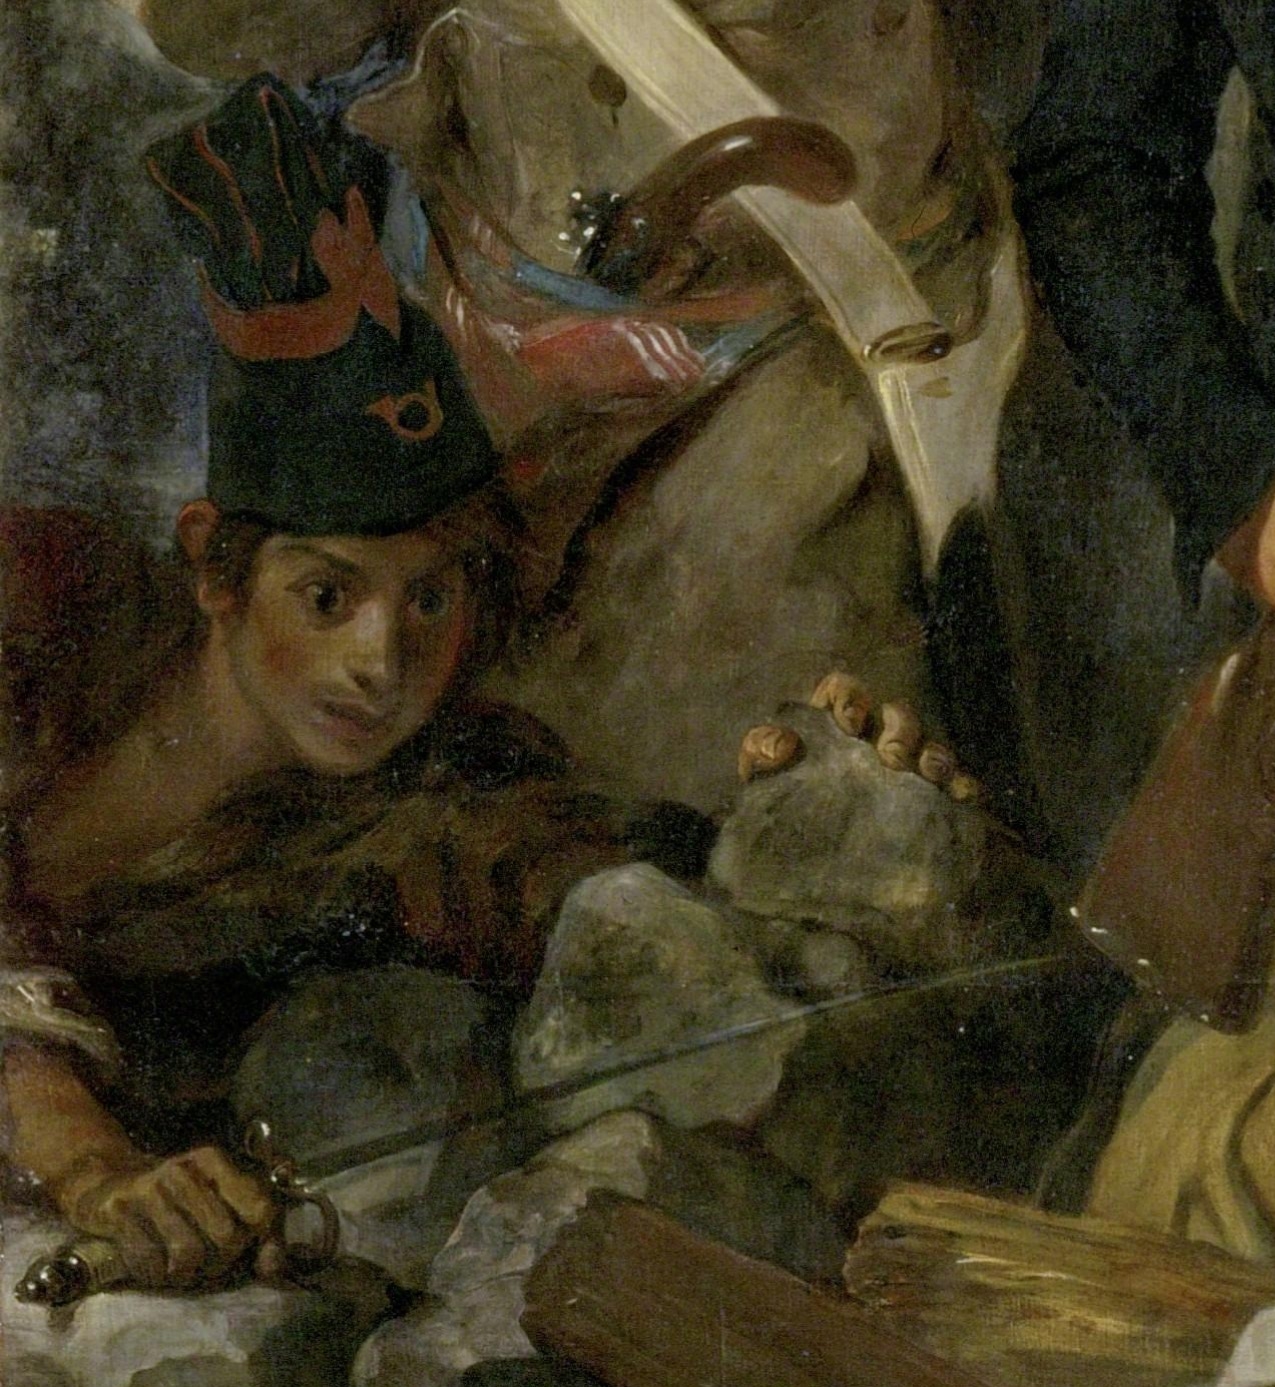 Eugene+Delacroix-1798-1863 (157).jpg